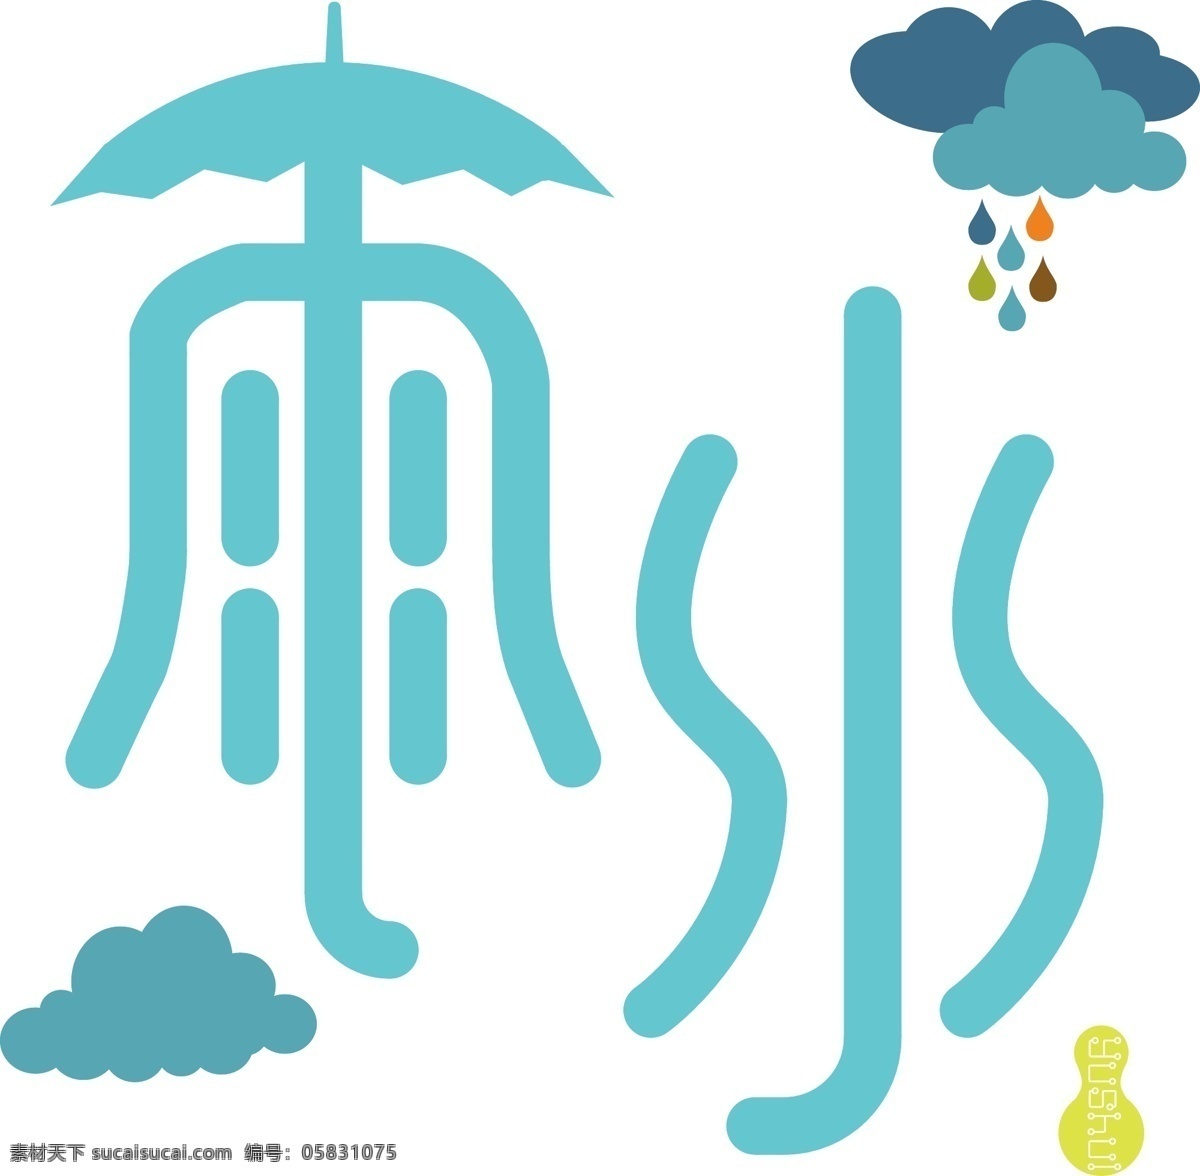 蓝绿 色调 二十四节气 雨水 字体 字体设计 蓝绿色调 雨伞 艺术字